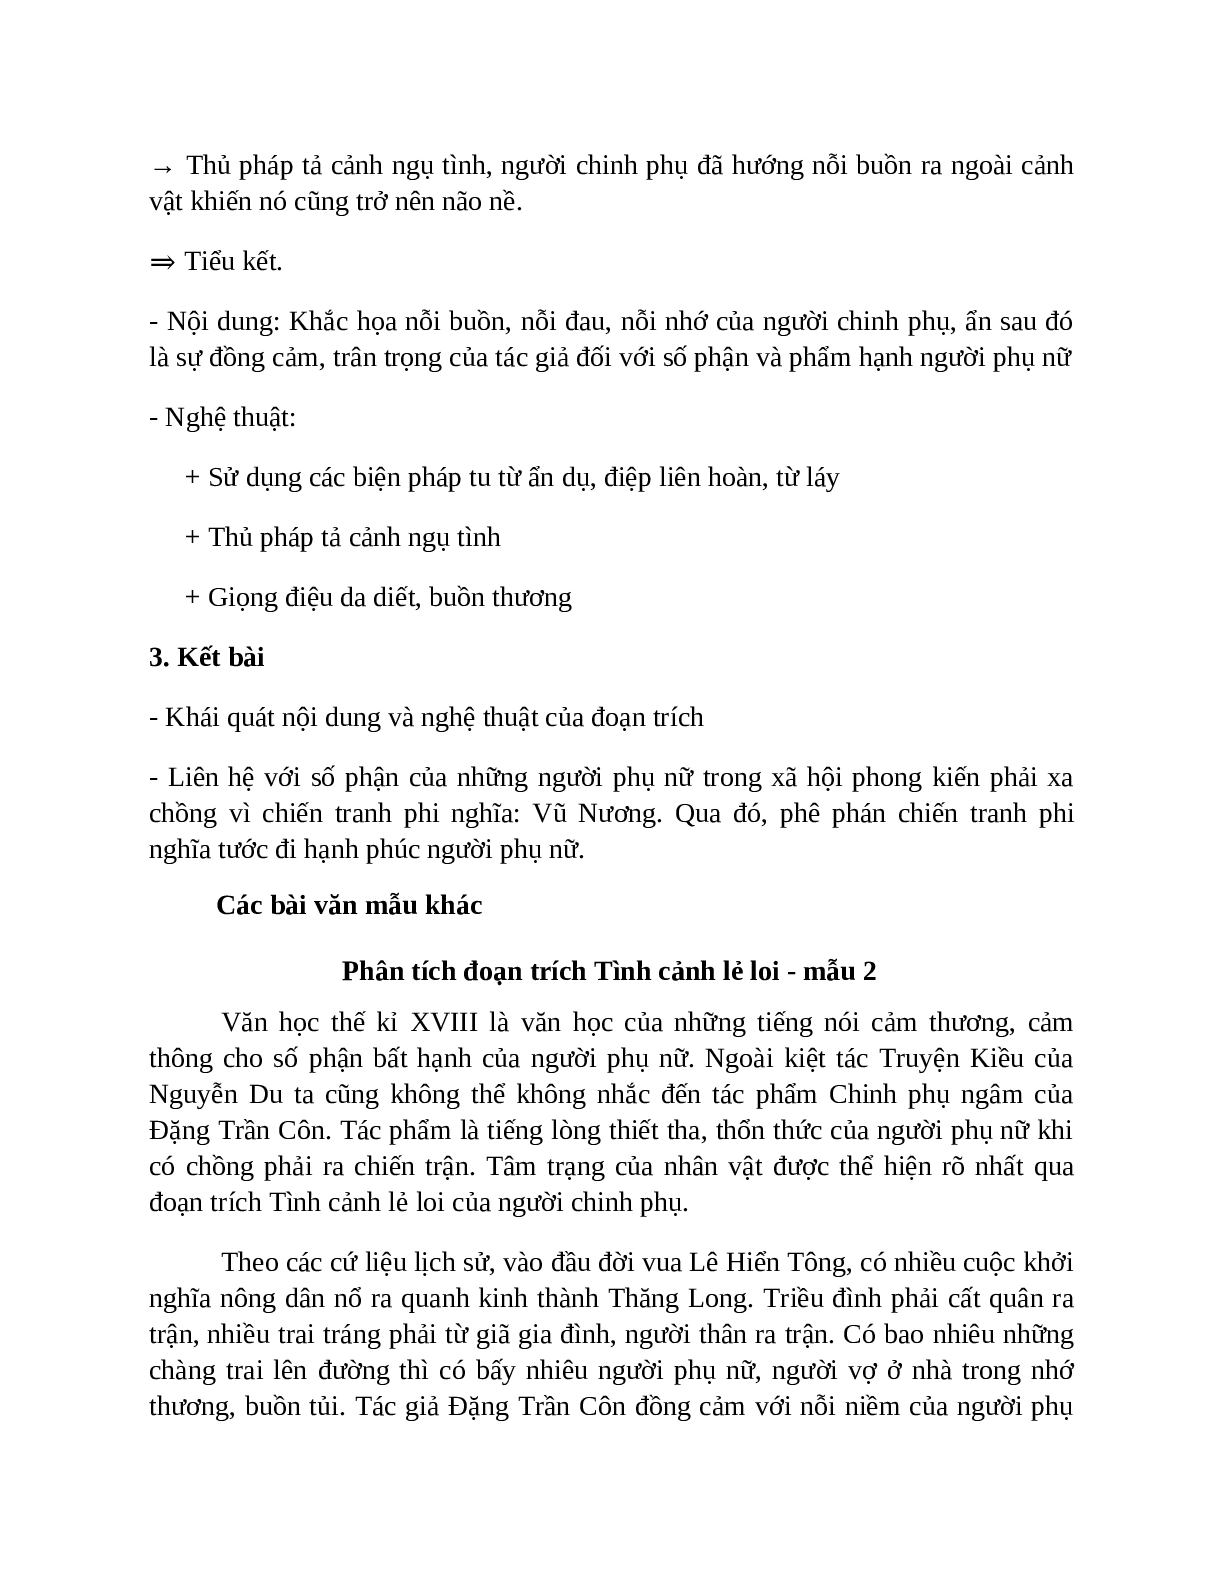 TOP 15 bài Phân tích Tình cảnh lẻ loi của người chinh phụ SIÊU HAY (trang 8)